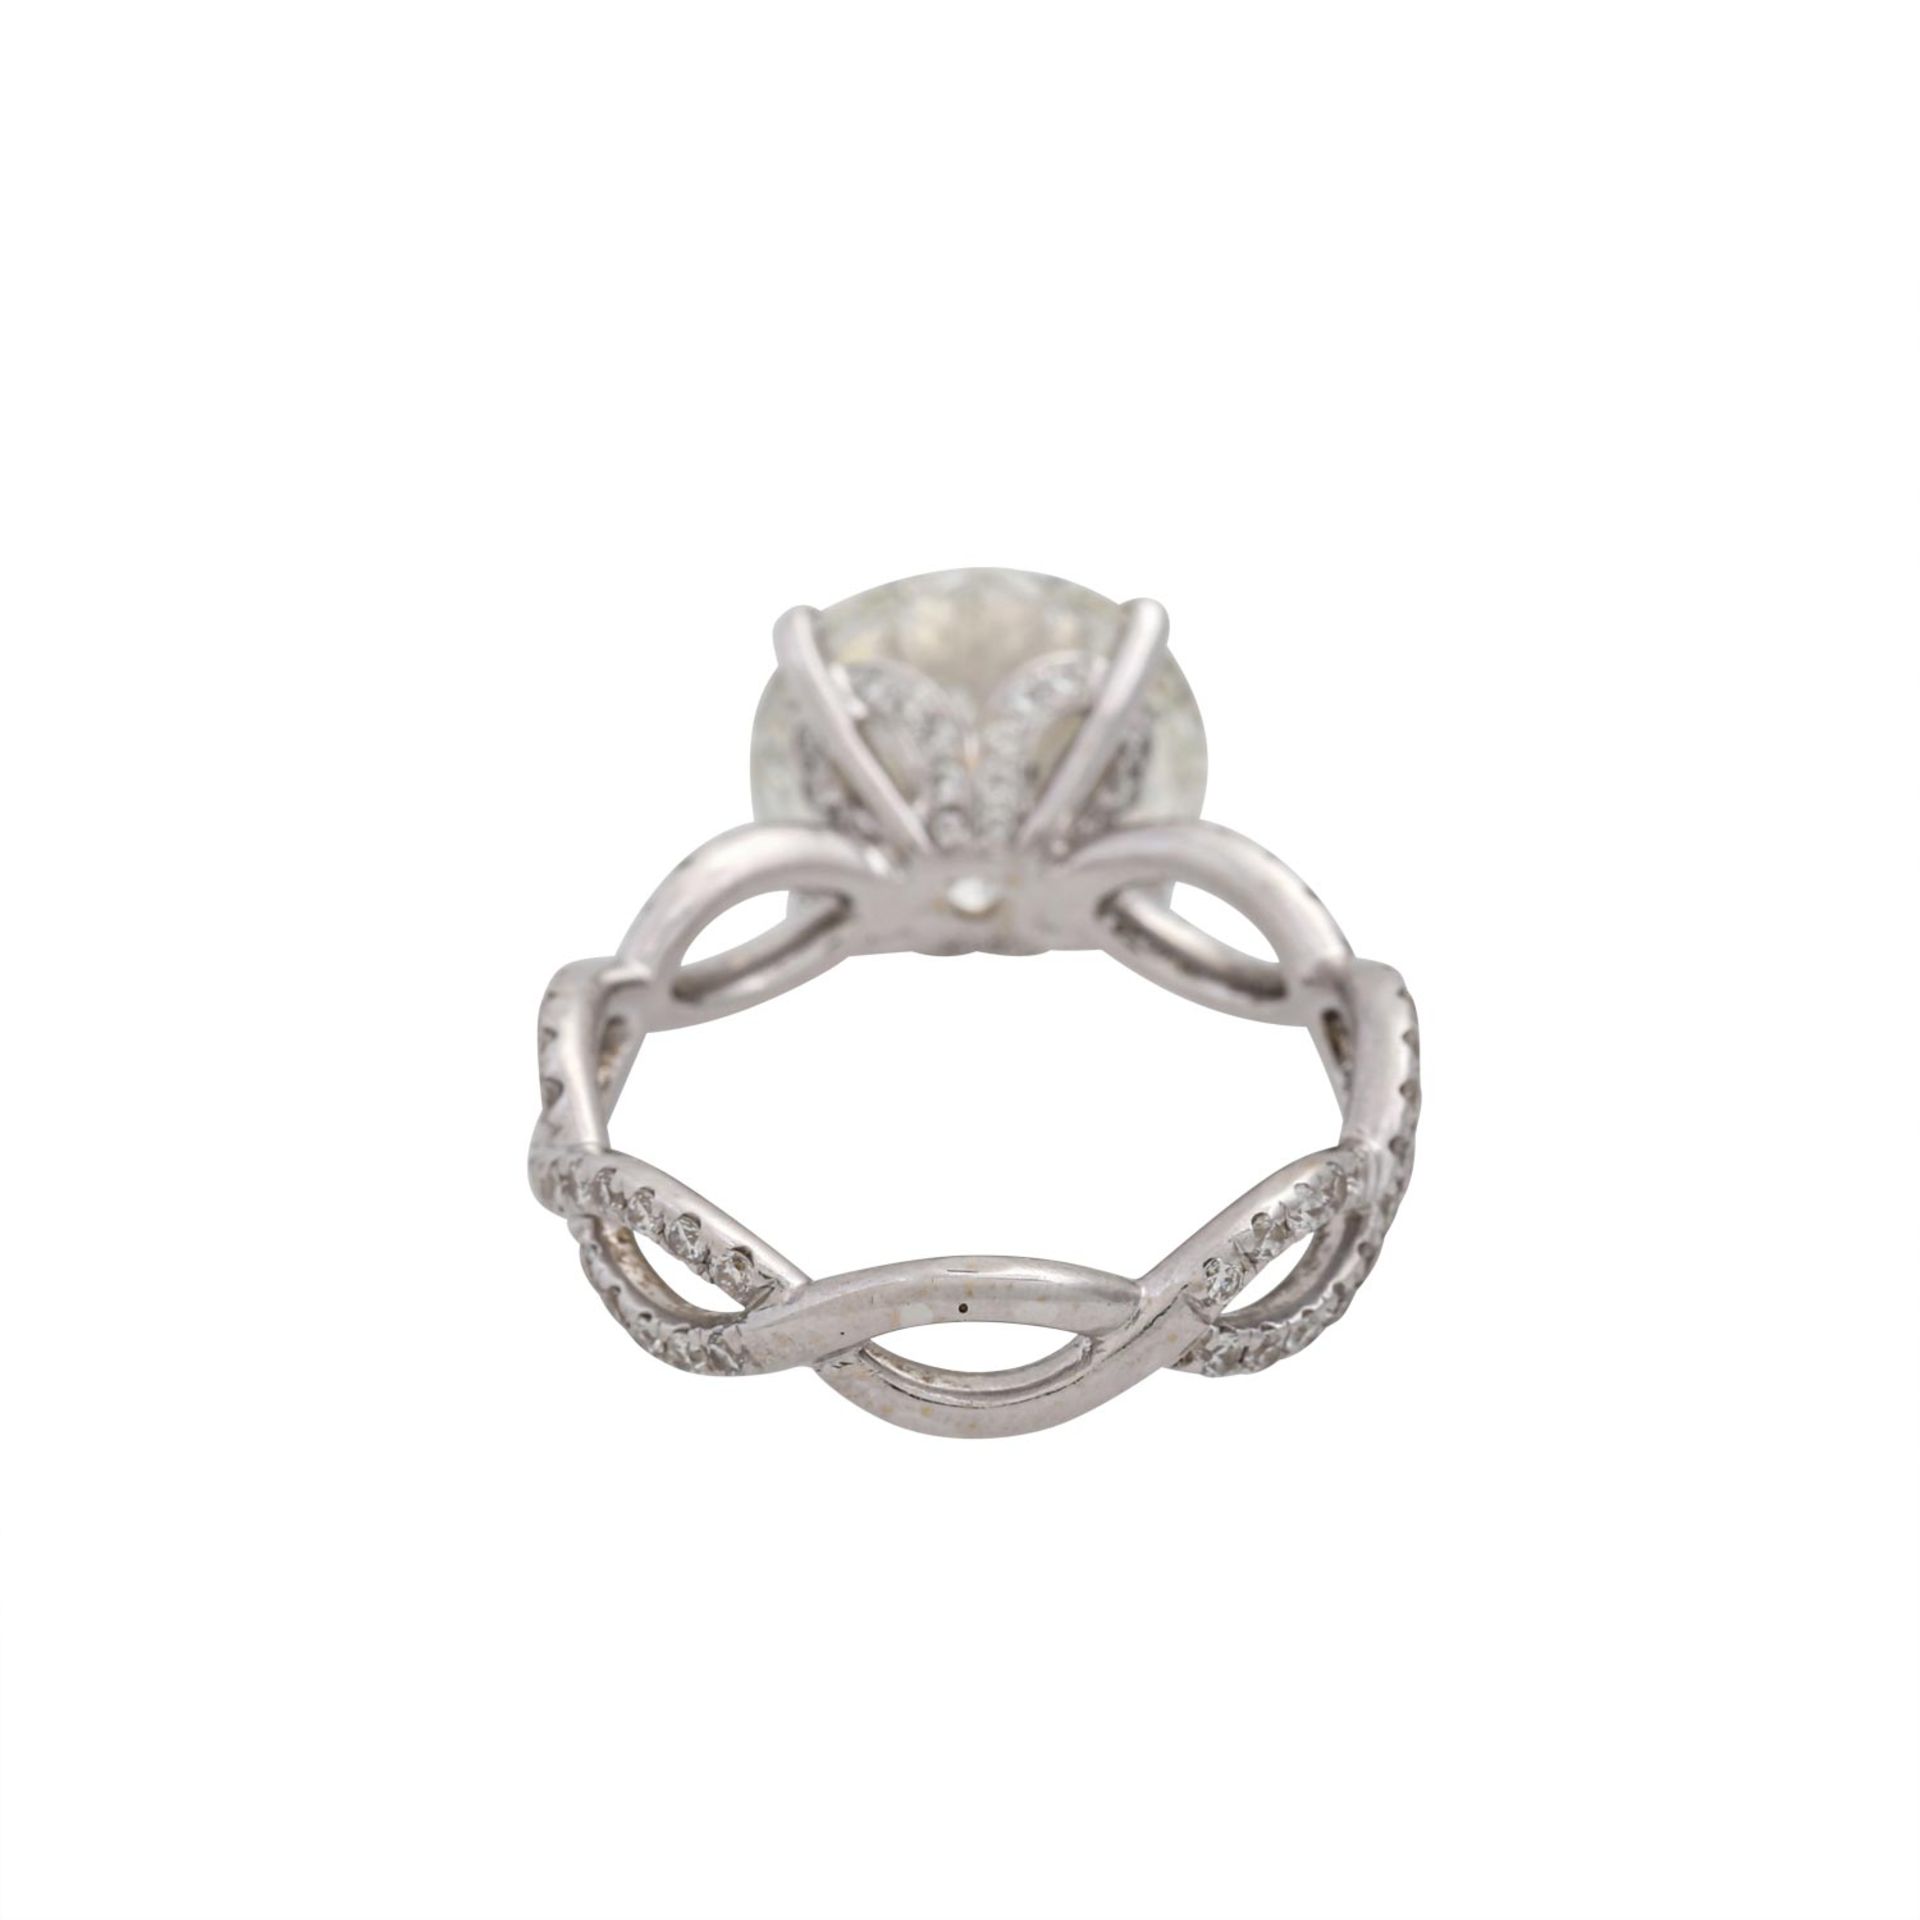 Ring mit Brillant von 5,00 ct,LGW (I)/P1, ex/ex/ex, weitere kleine Diamanten zus. ca. - Bild 4 aus 9